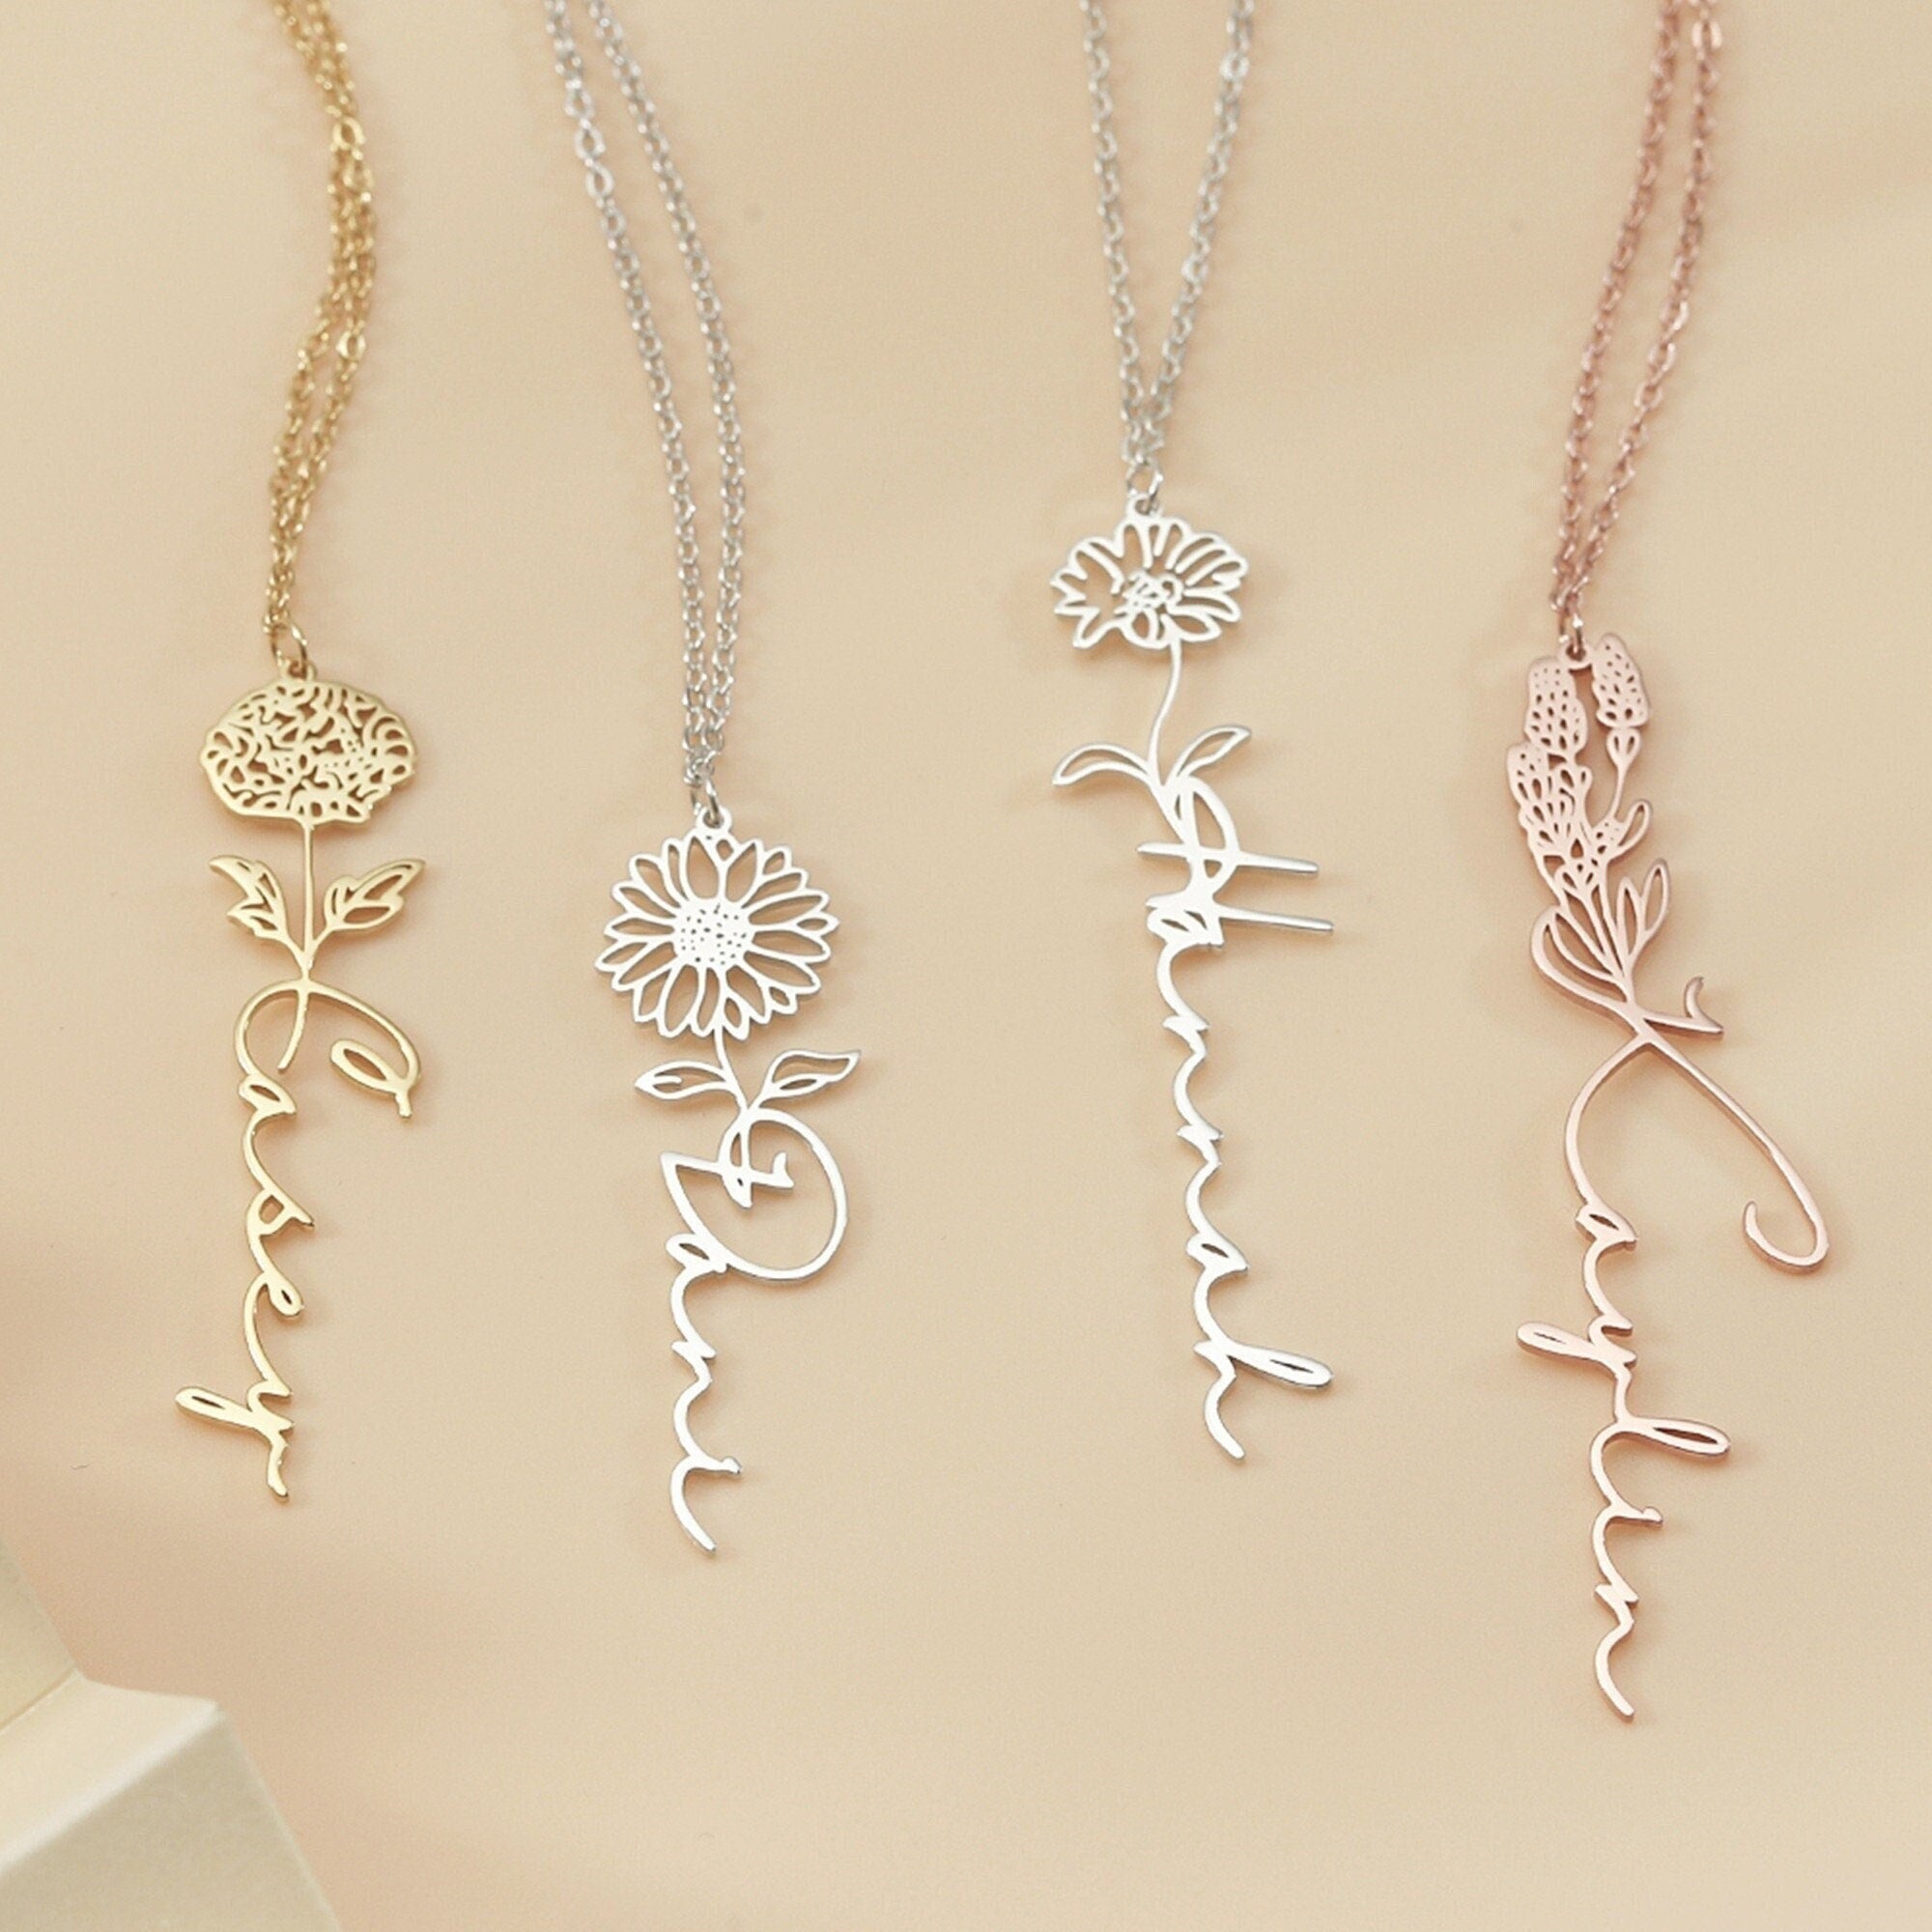 Custom Name Necklace with Birth Flower | Dainty Personalized Minimalist Jewelry